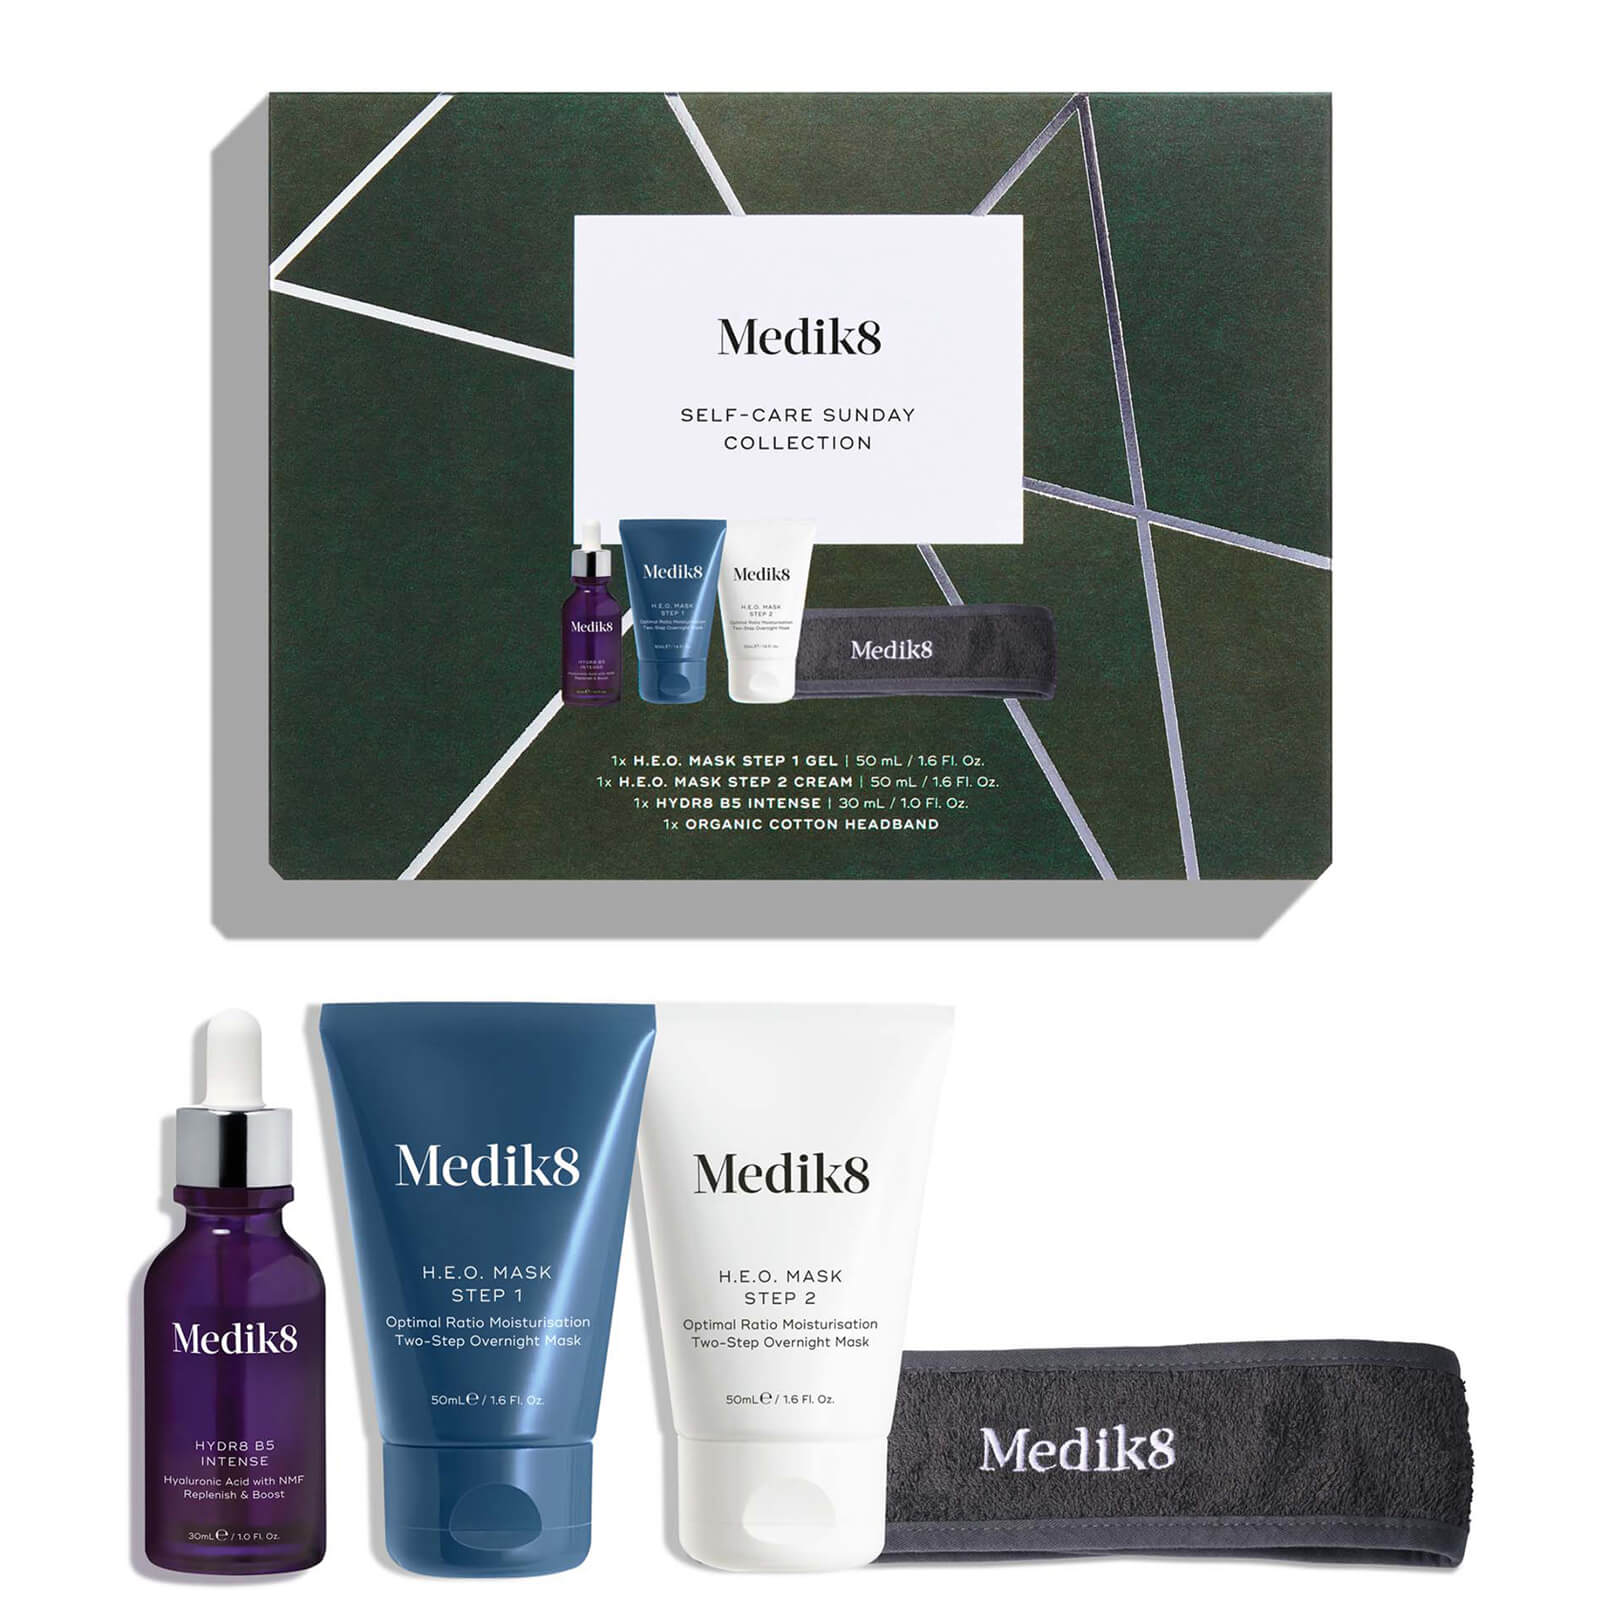 Medik8 Self-care Sunday Collection Kit In Multi